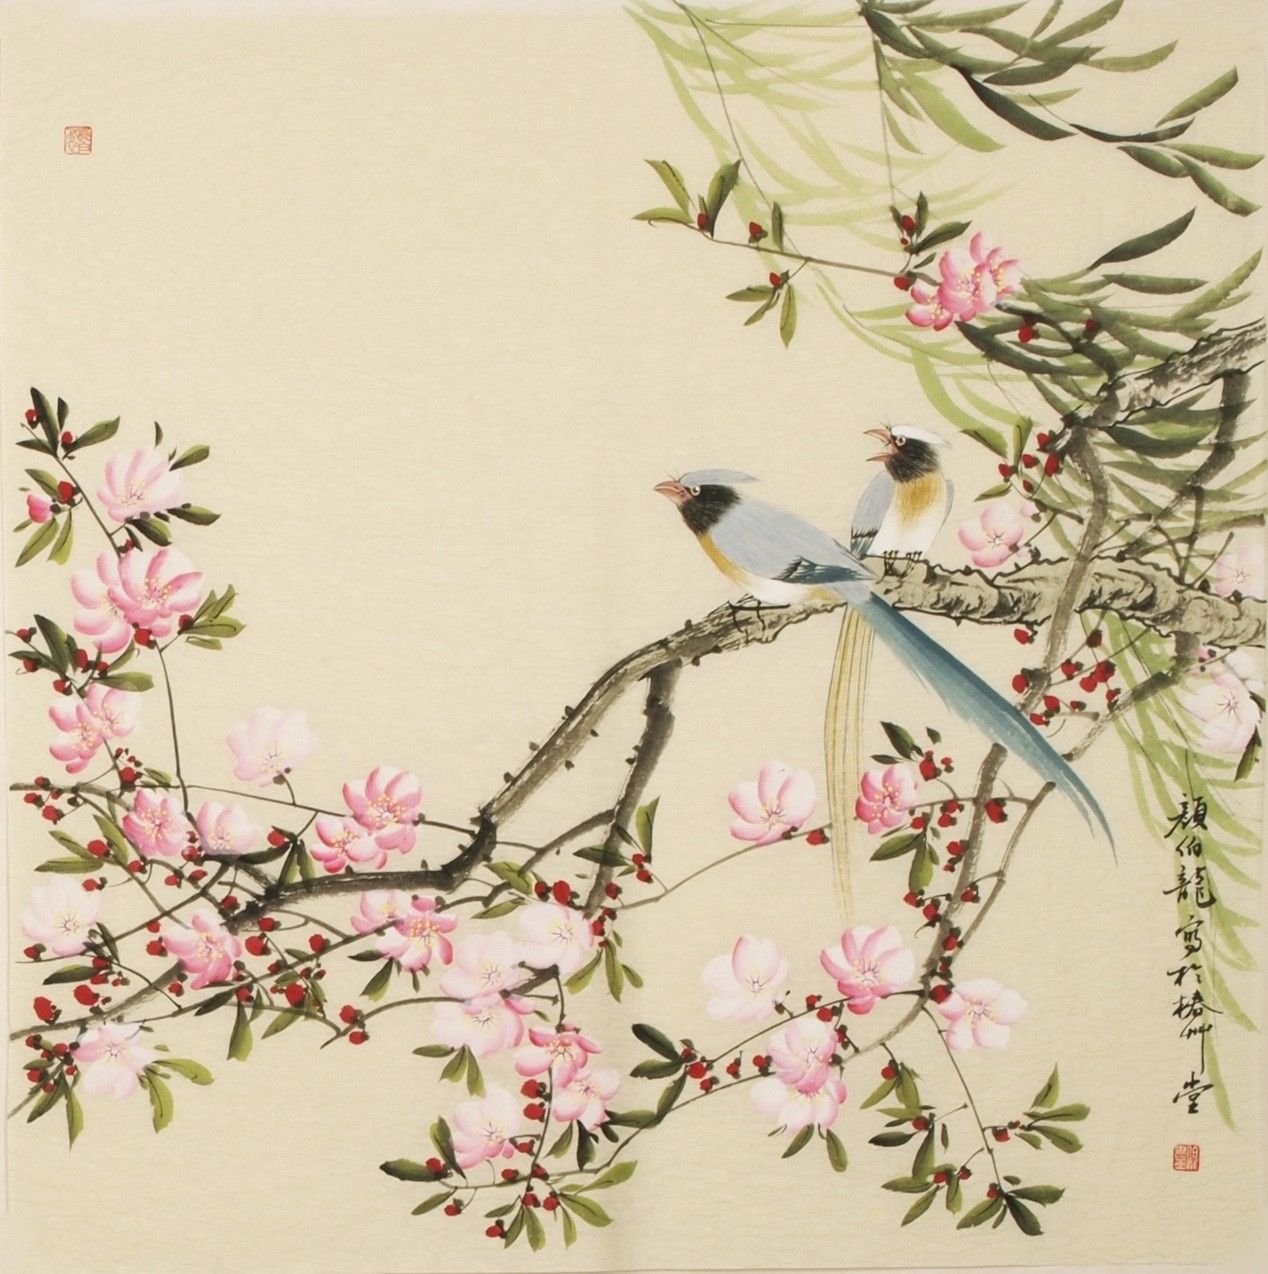 16 коробок серых птичек на китайском. Ци Байши Сакура. Ласточки Шинуазри. Сакура в стиле гунби. Peach Blossom японская китайская живопись.